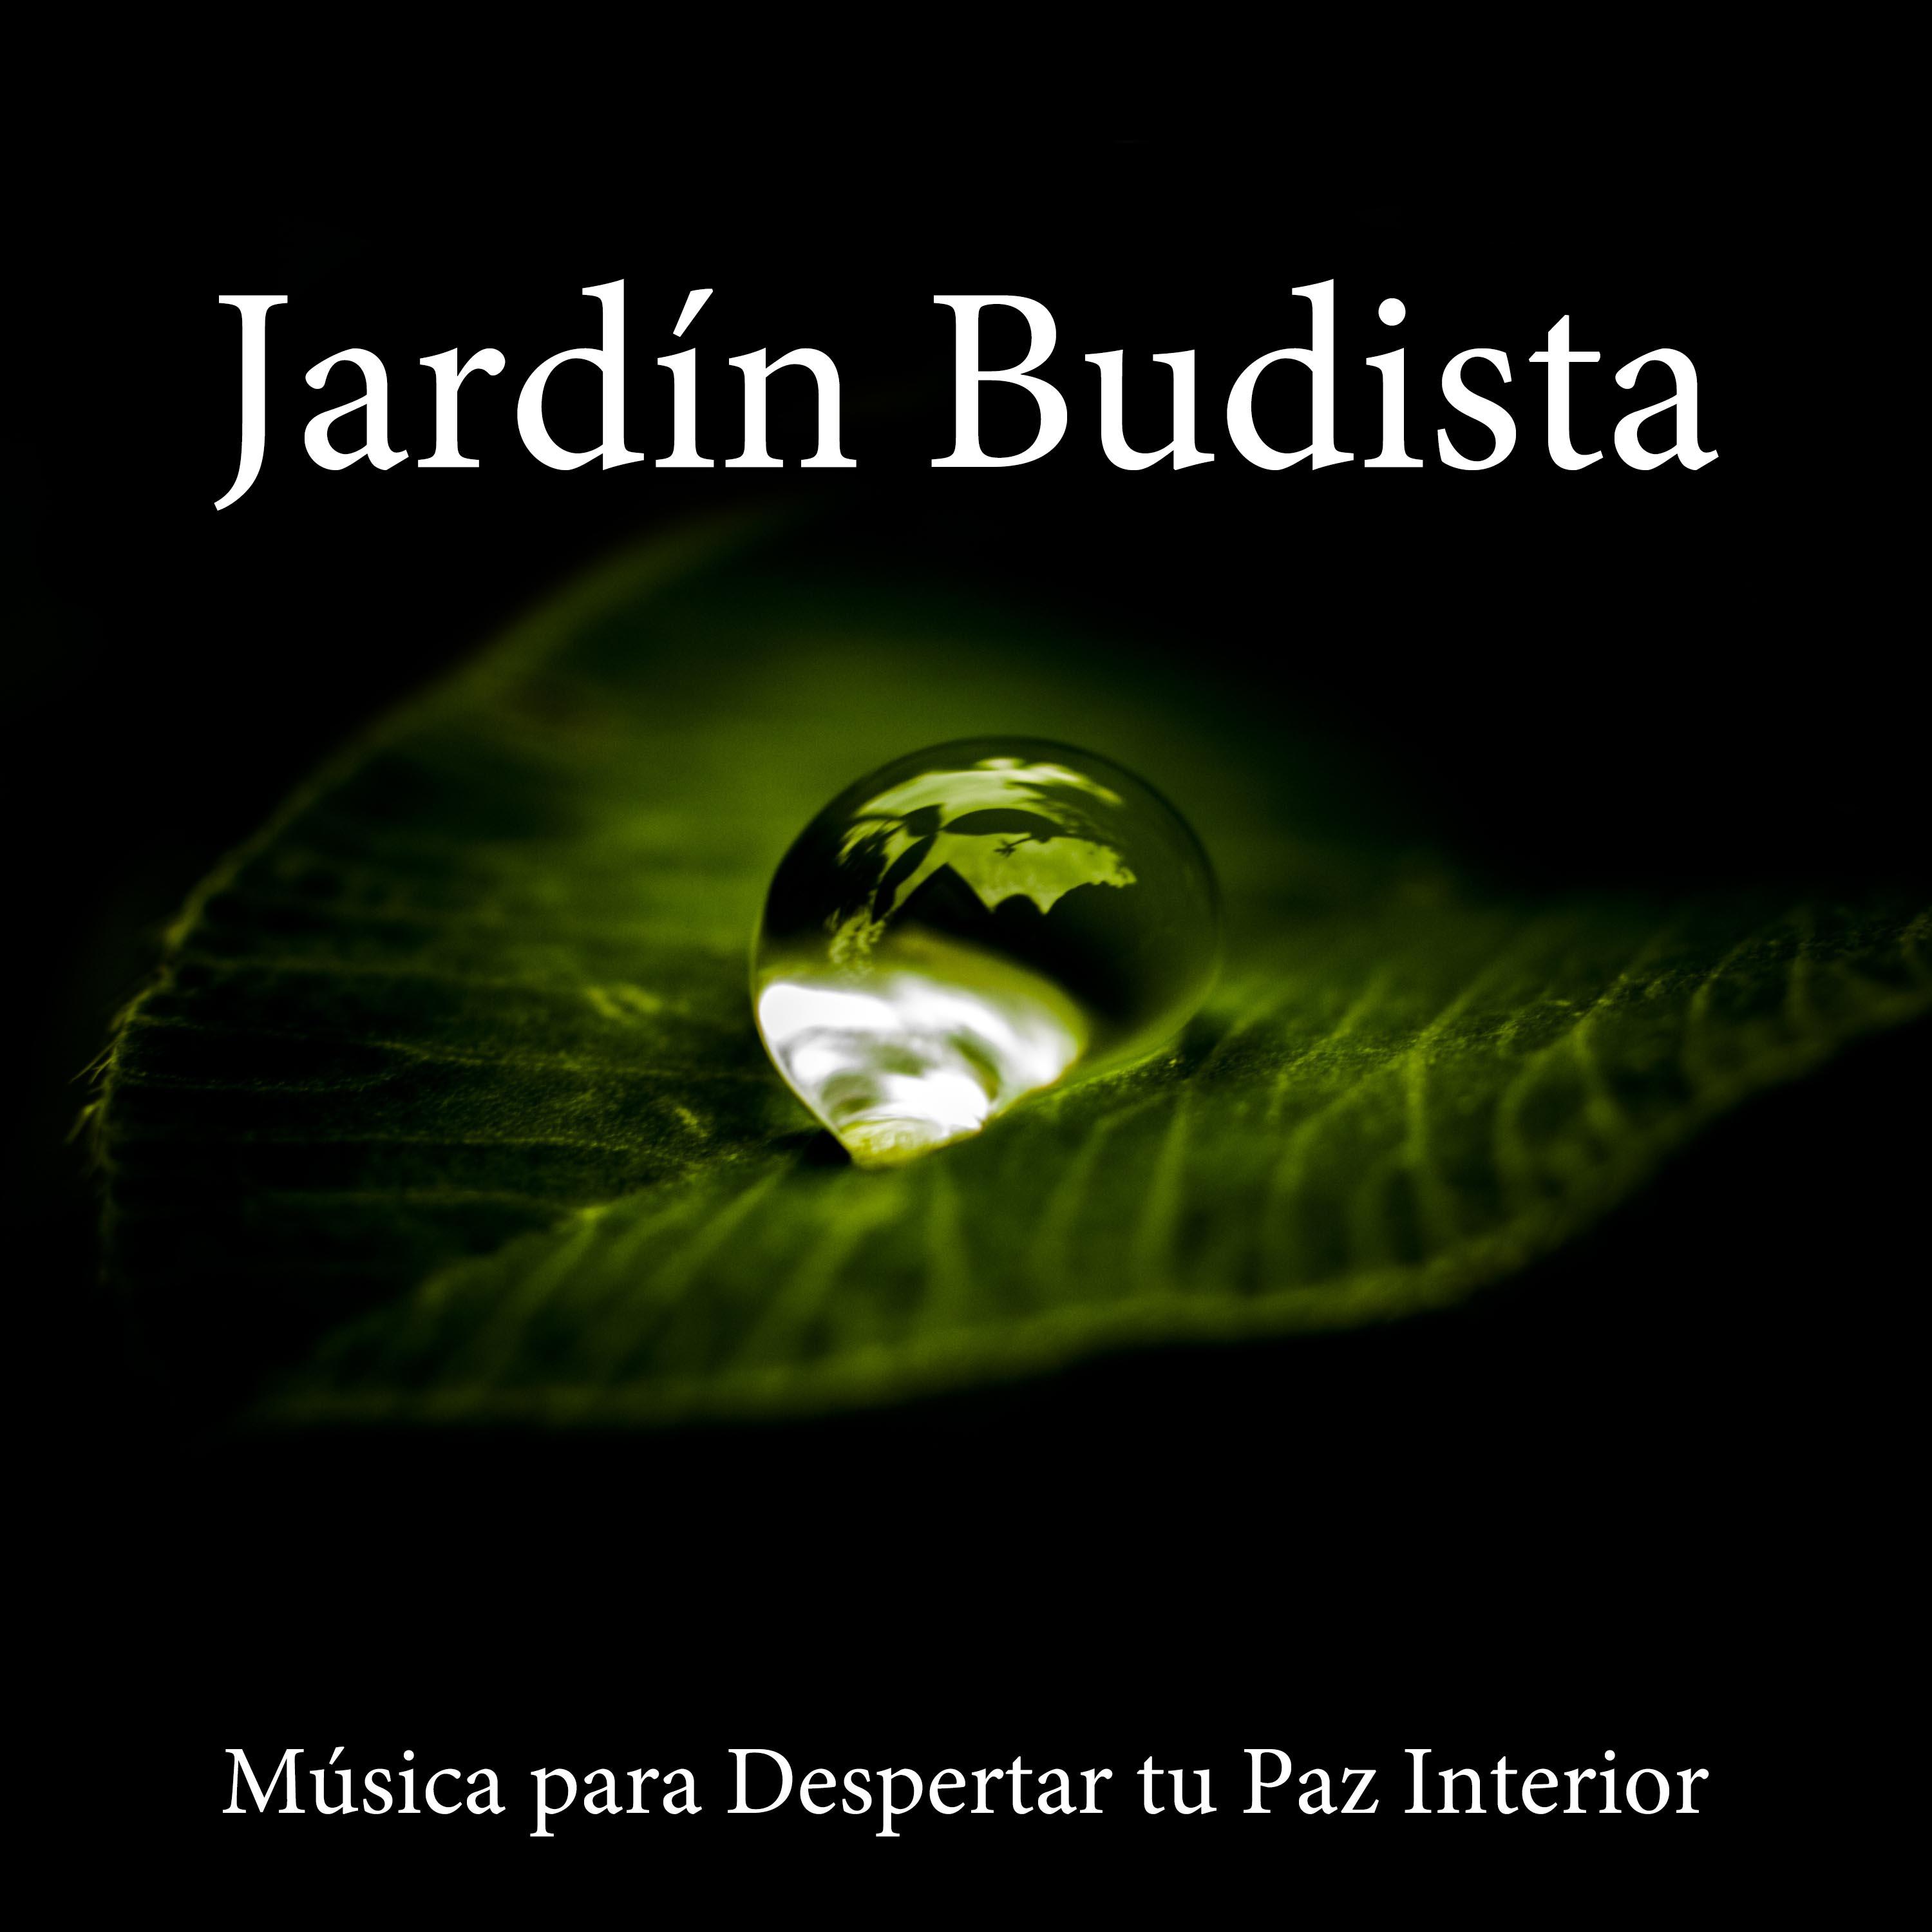 Jardin Budista - Música para Despertar tu Paz Interior y la Relajación Emocional